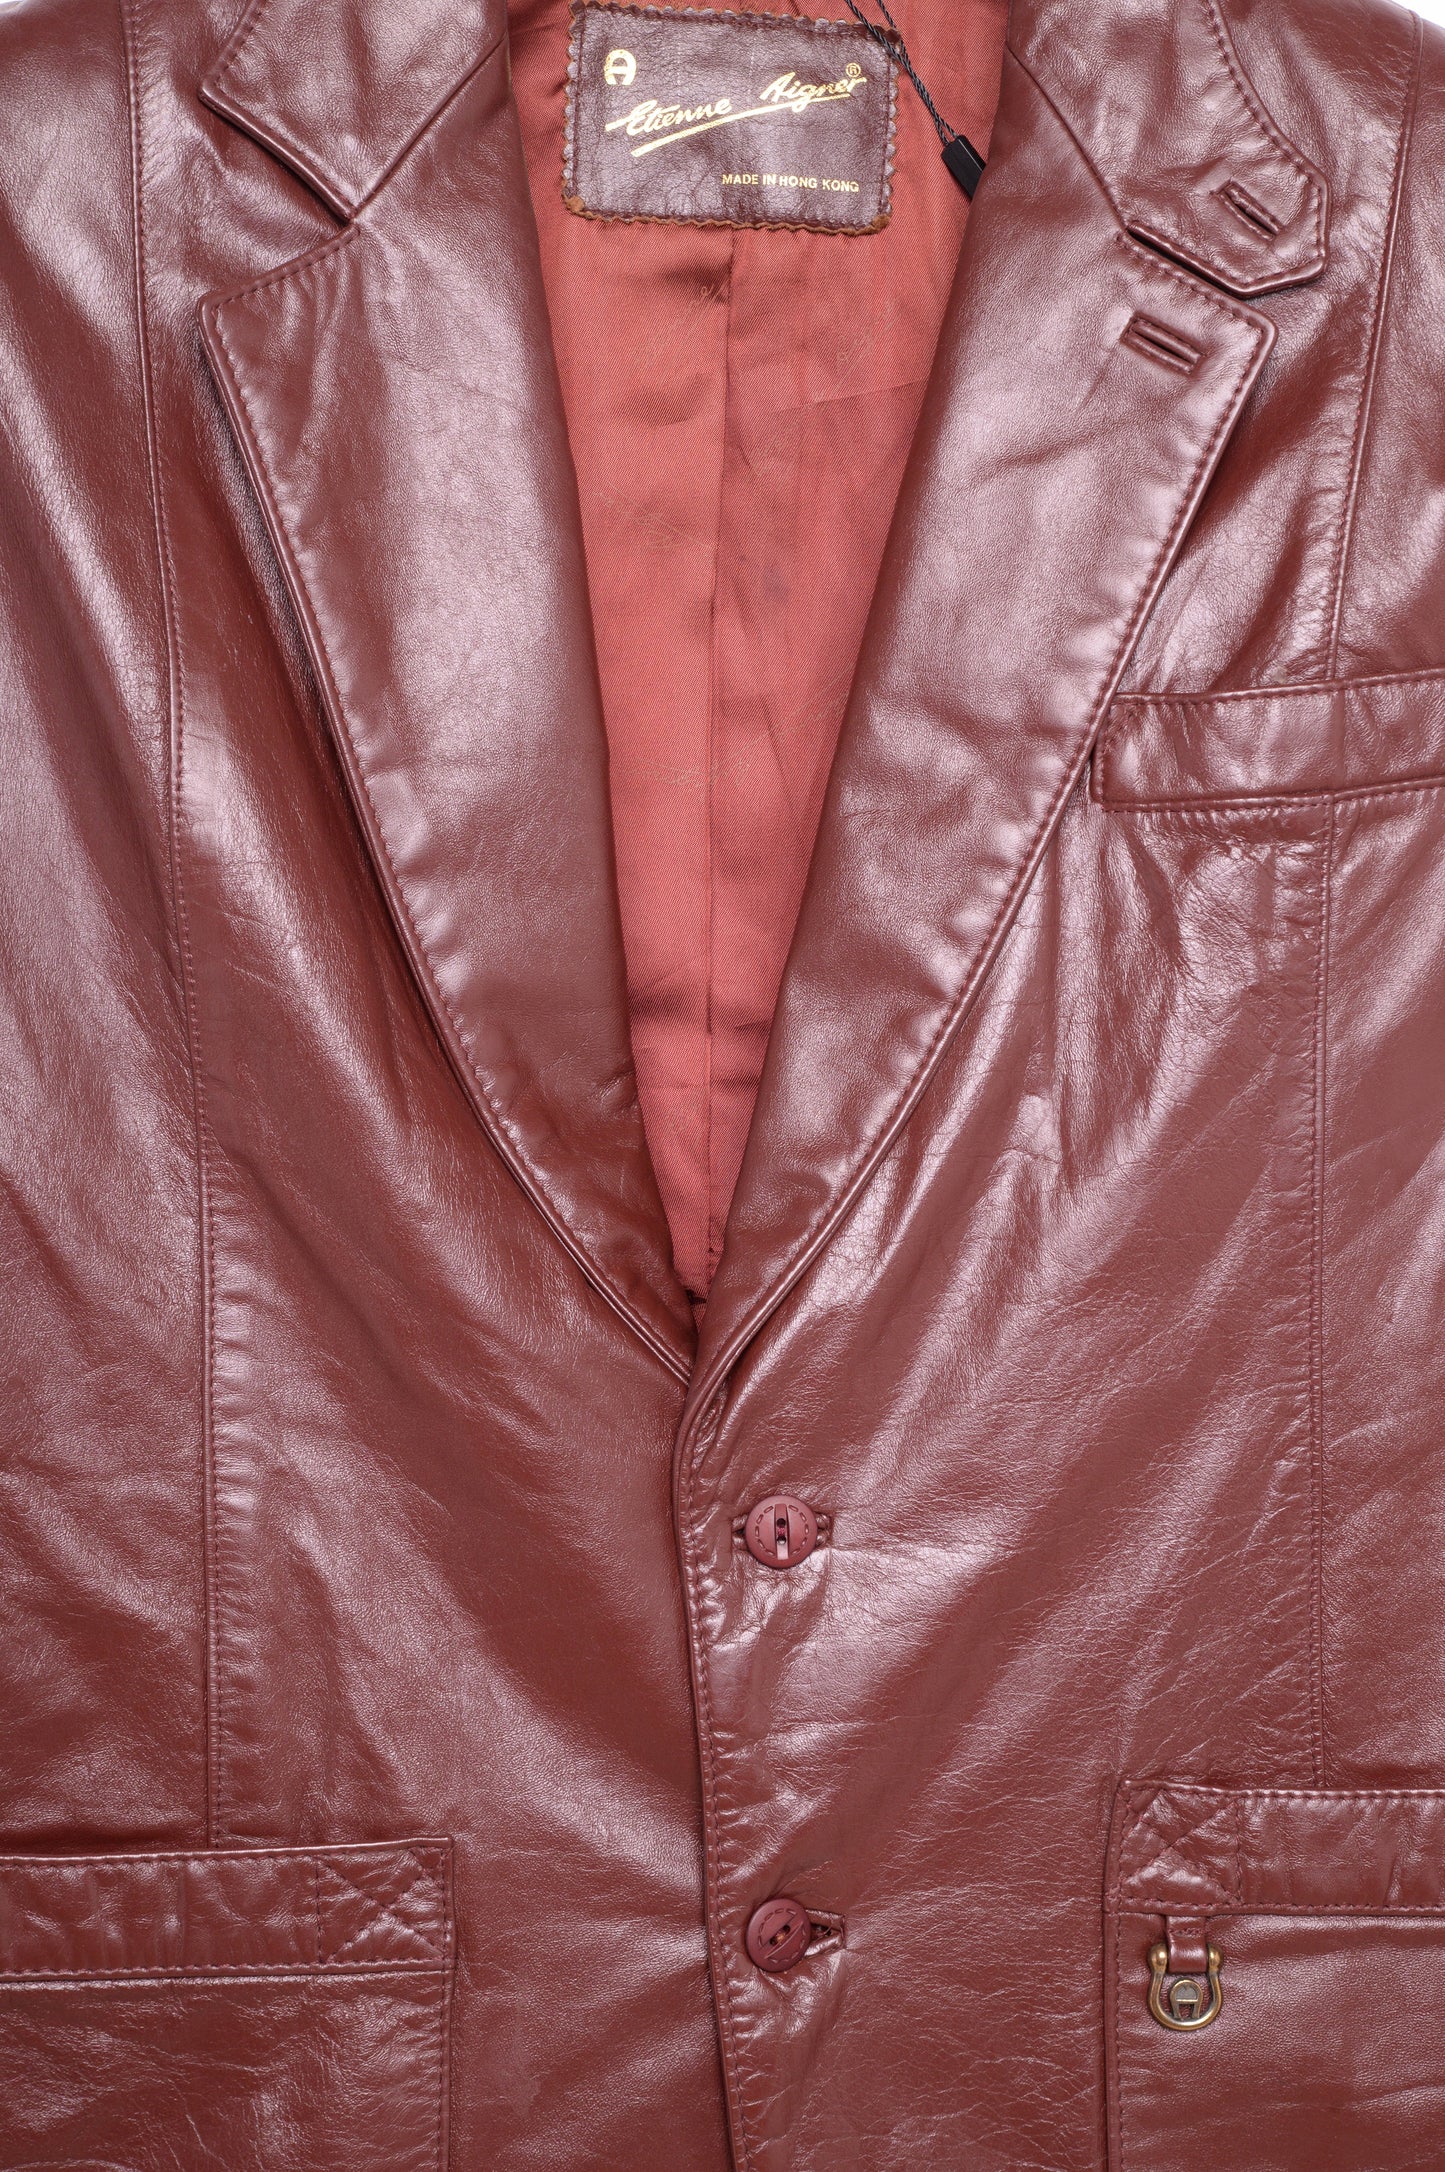 1970s Leather Jacket